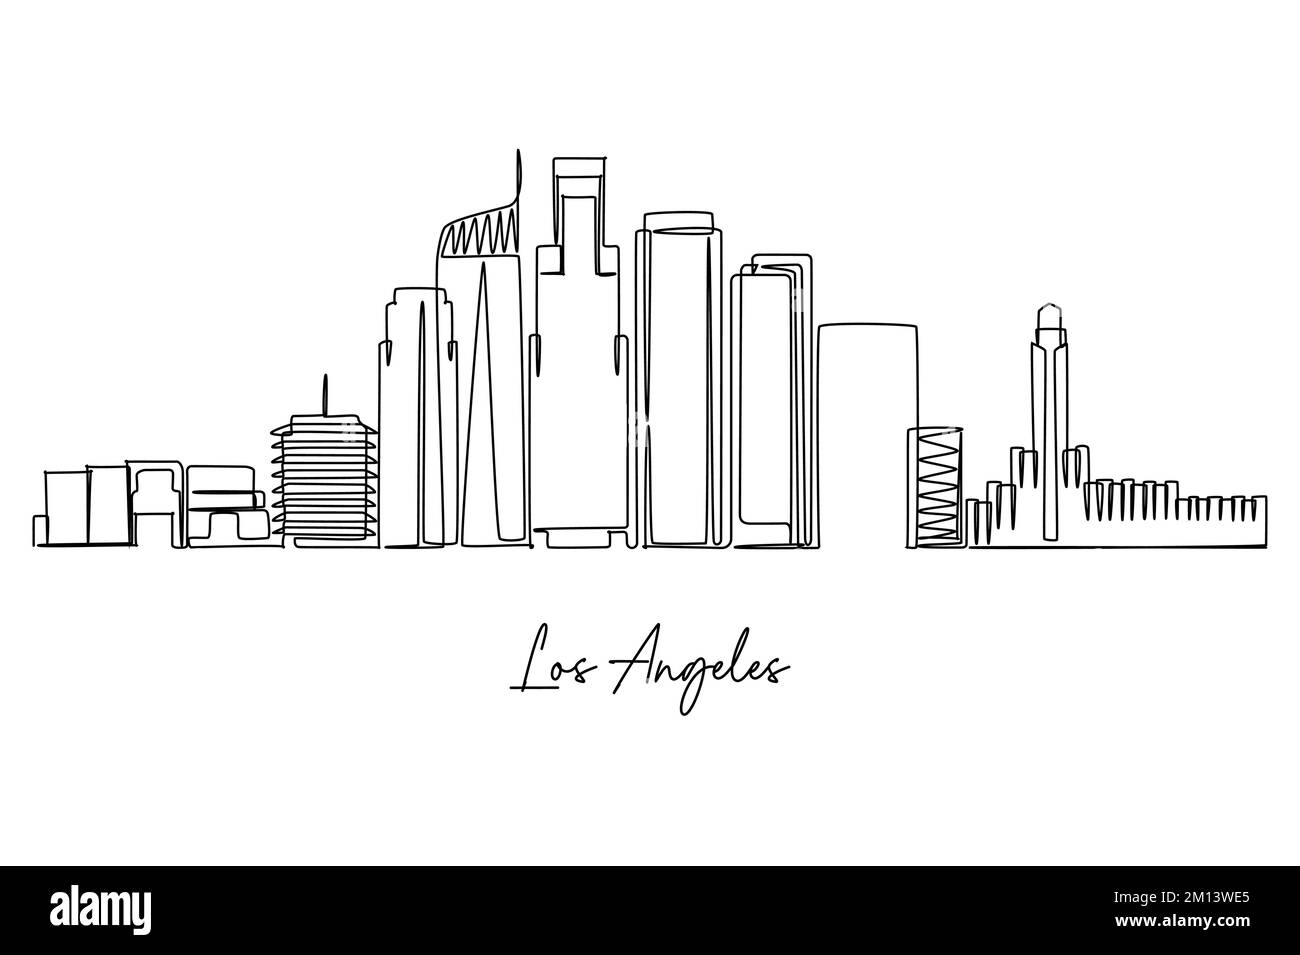 Un disegno a linea continua dello skyline della città di Los Angeles. Destinazione turistica famosa in tutto il mondo. Semplice disegno di stile disegnato a mano per viaggi e turismo promo Illustrazione Vettoriale